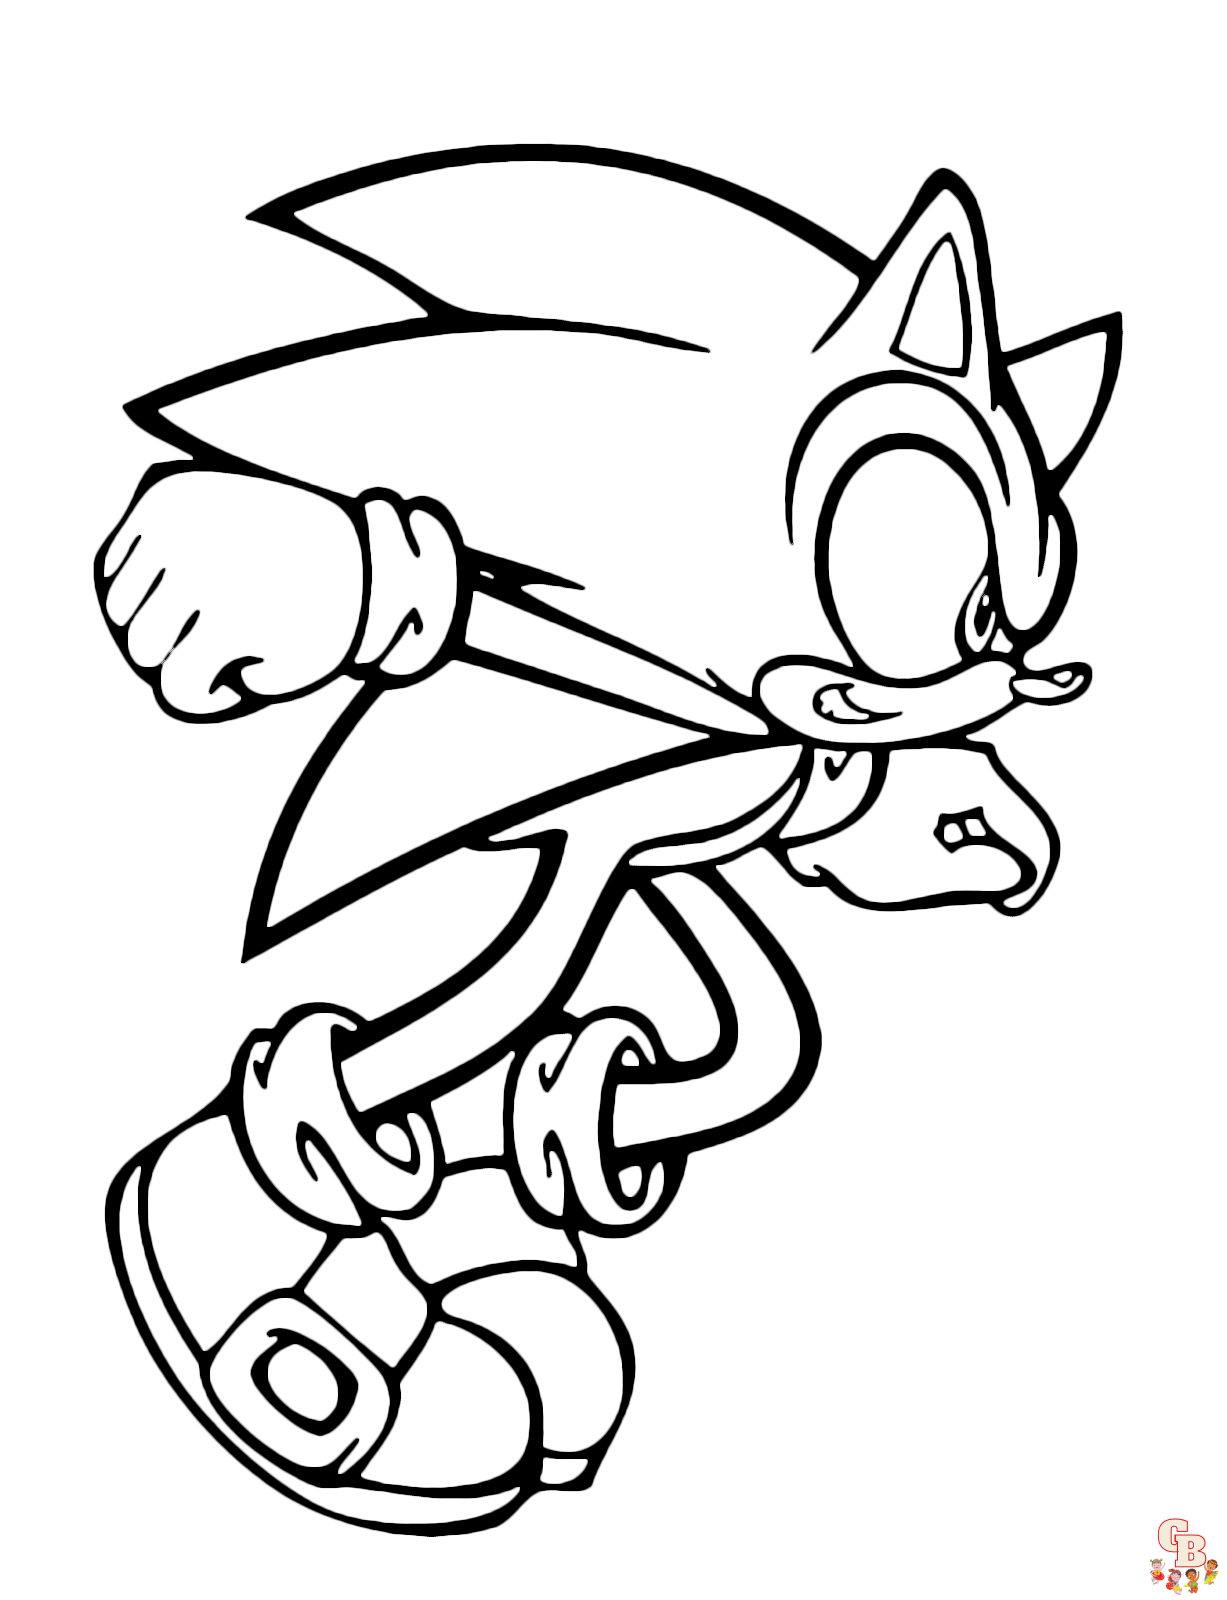 Sonic Boom está listo para liberar su velocidad supersónica.